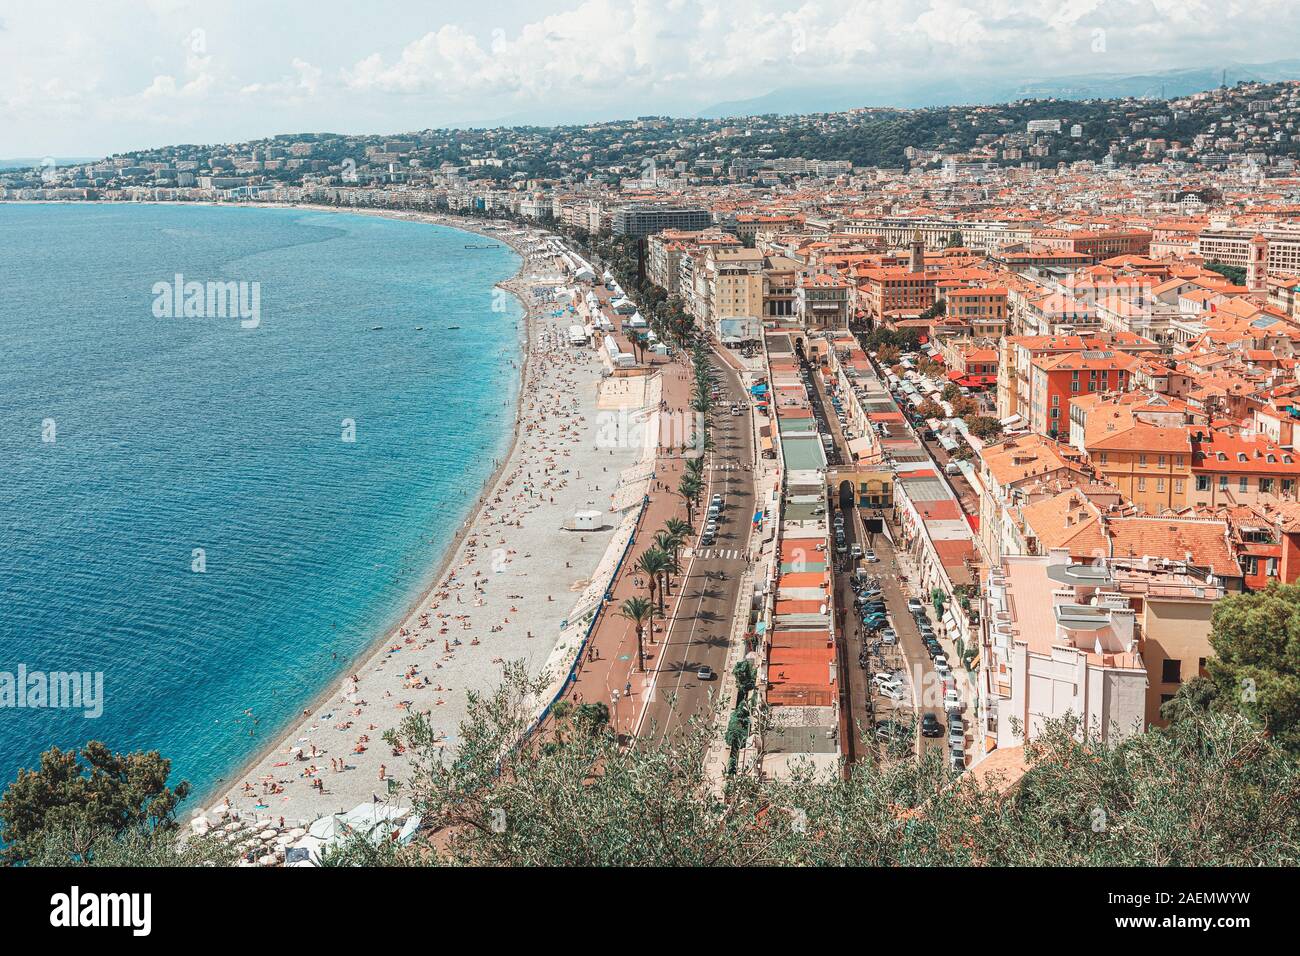 Die öffentlichen Thermen Plage de Castel und Plage des Ponchettes in der Stadt Nizza mit der bekannten Promenade Quai des Etats Unis in Frankreich Stockfoto